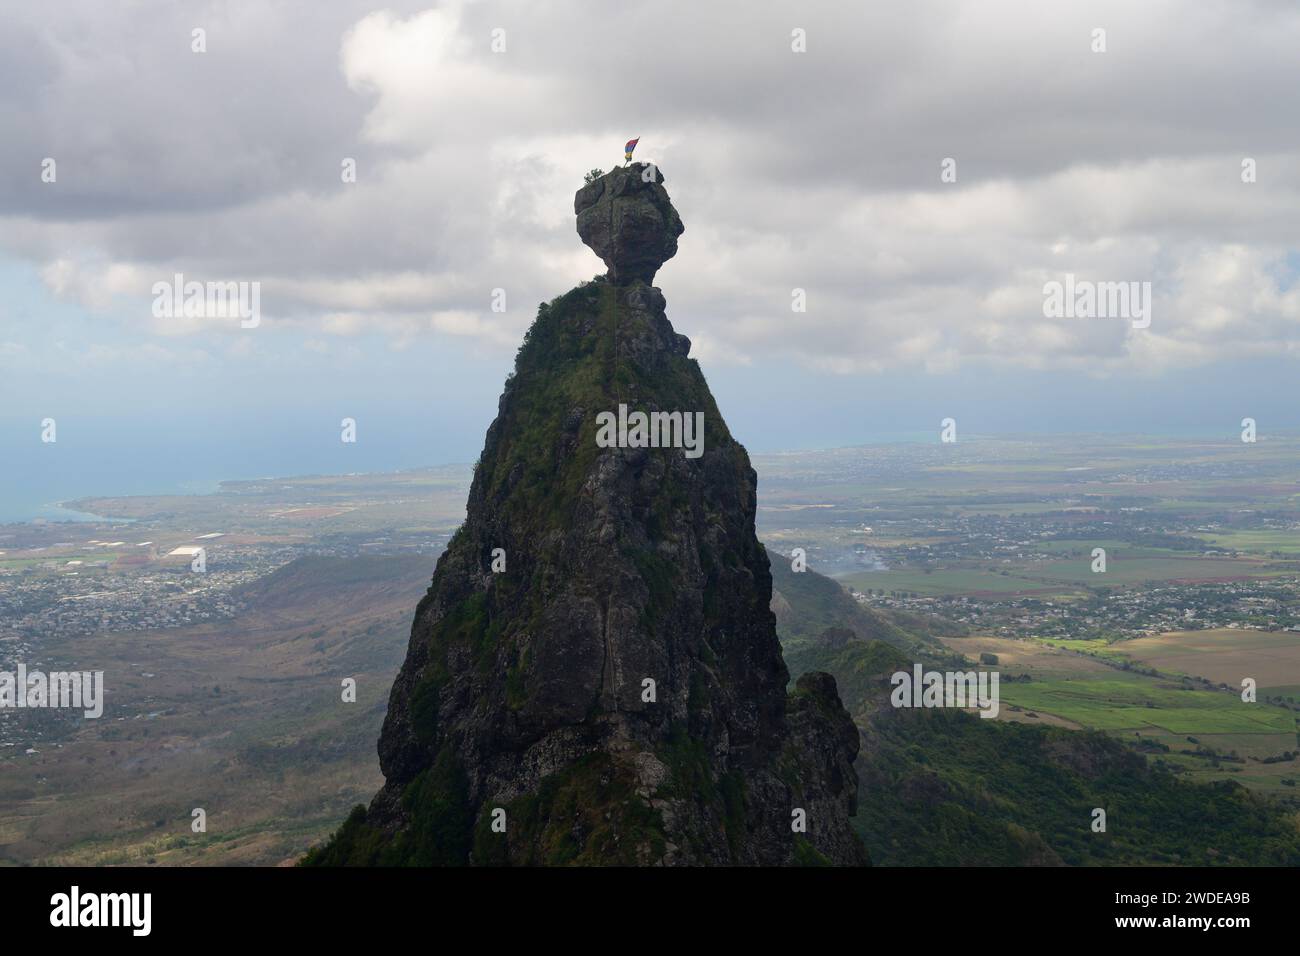 Pieter entrambe le vette della montagna a forma di testa a Mauritius da una vista aerea Foto Stock